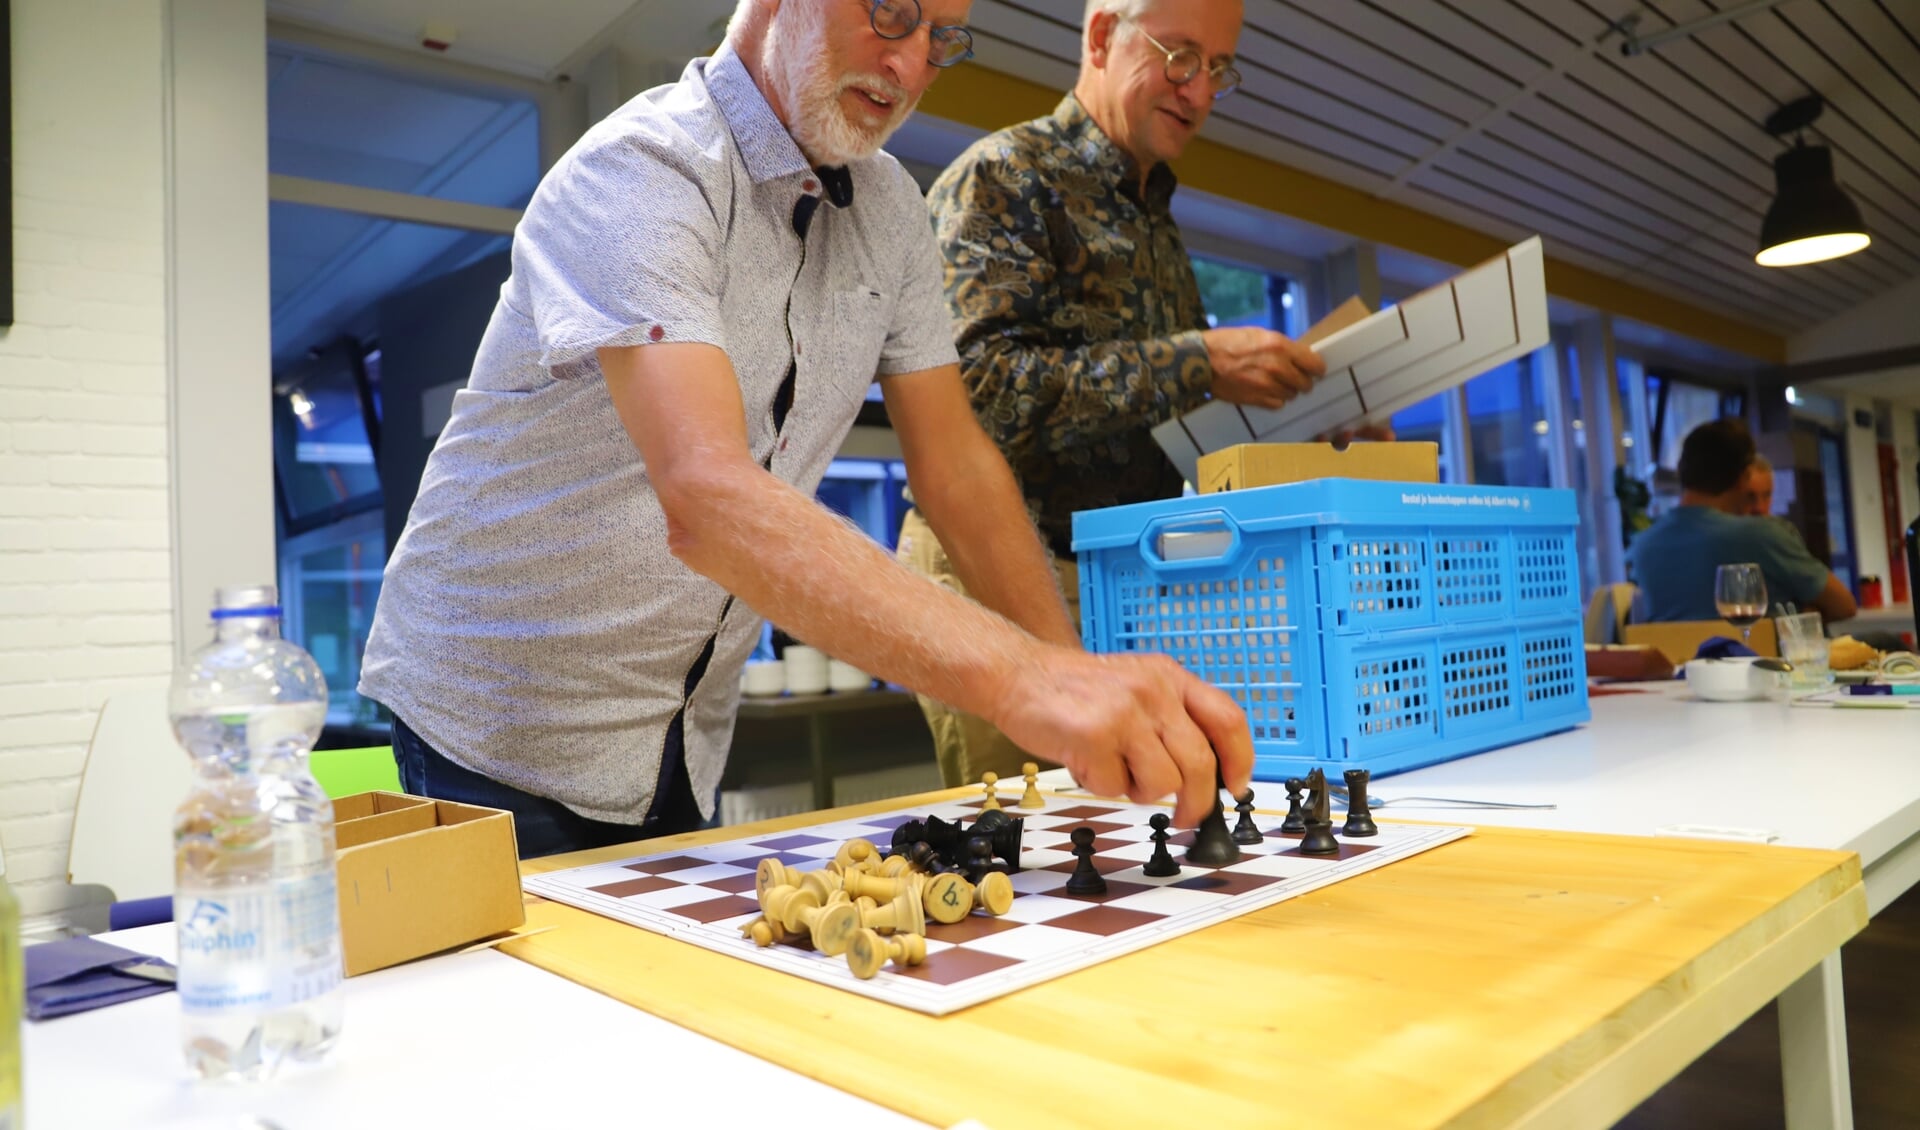 Ben Balm inspecteert de schaakstukken die maandenlang ongebruikt opgeslagen lagen. 